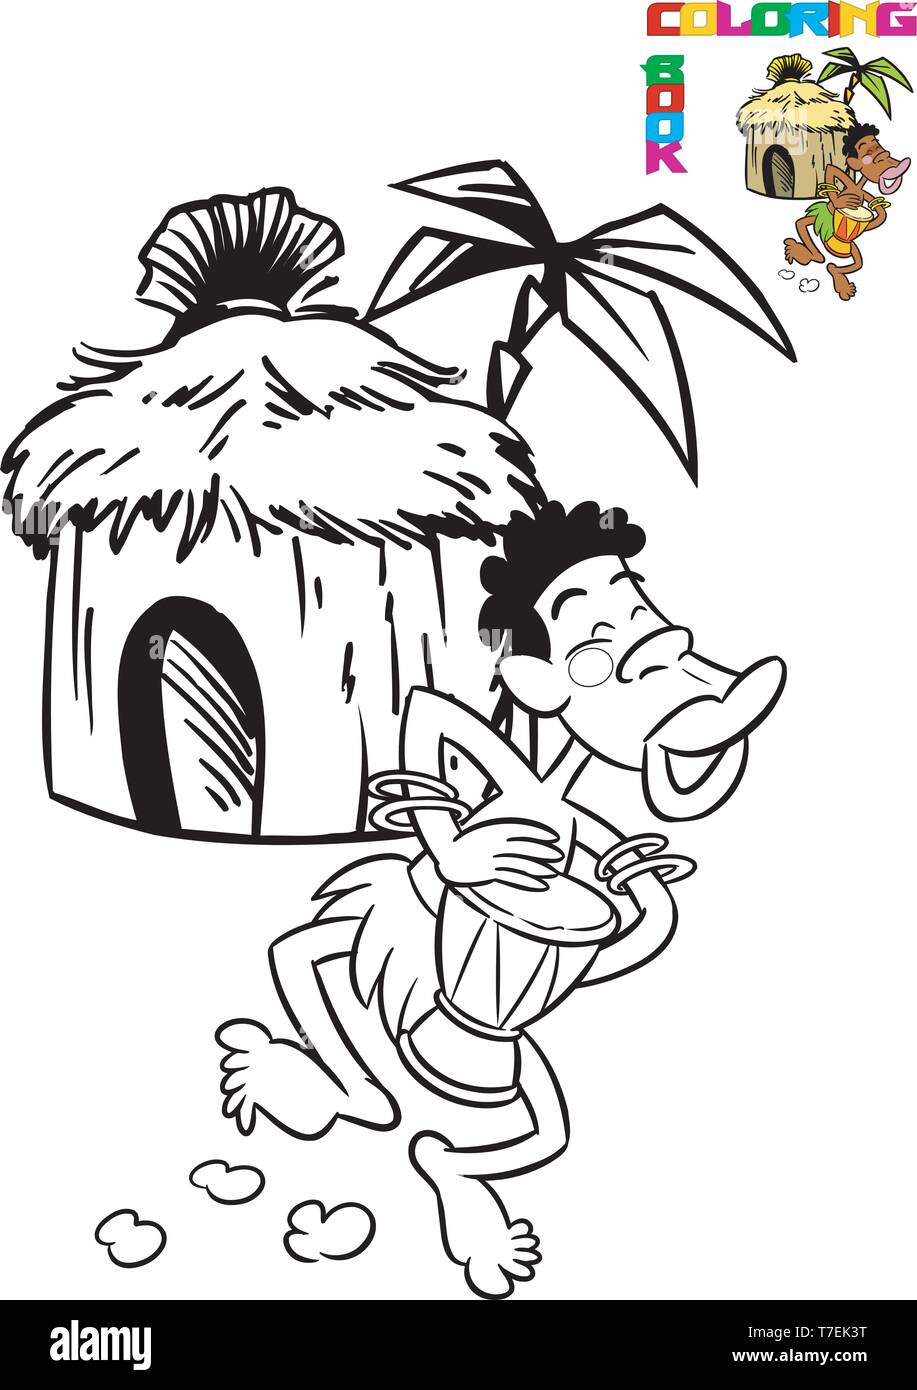 L'illustration montre un fond d'autochtones danse des huttes. Illustration réalisée en contour noir pour livre à colorier, sur des calques distincts. Illustration de Vecteur